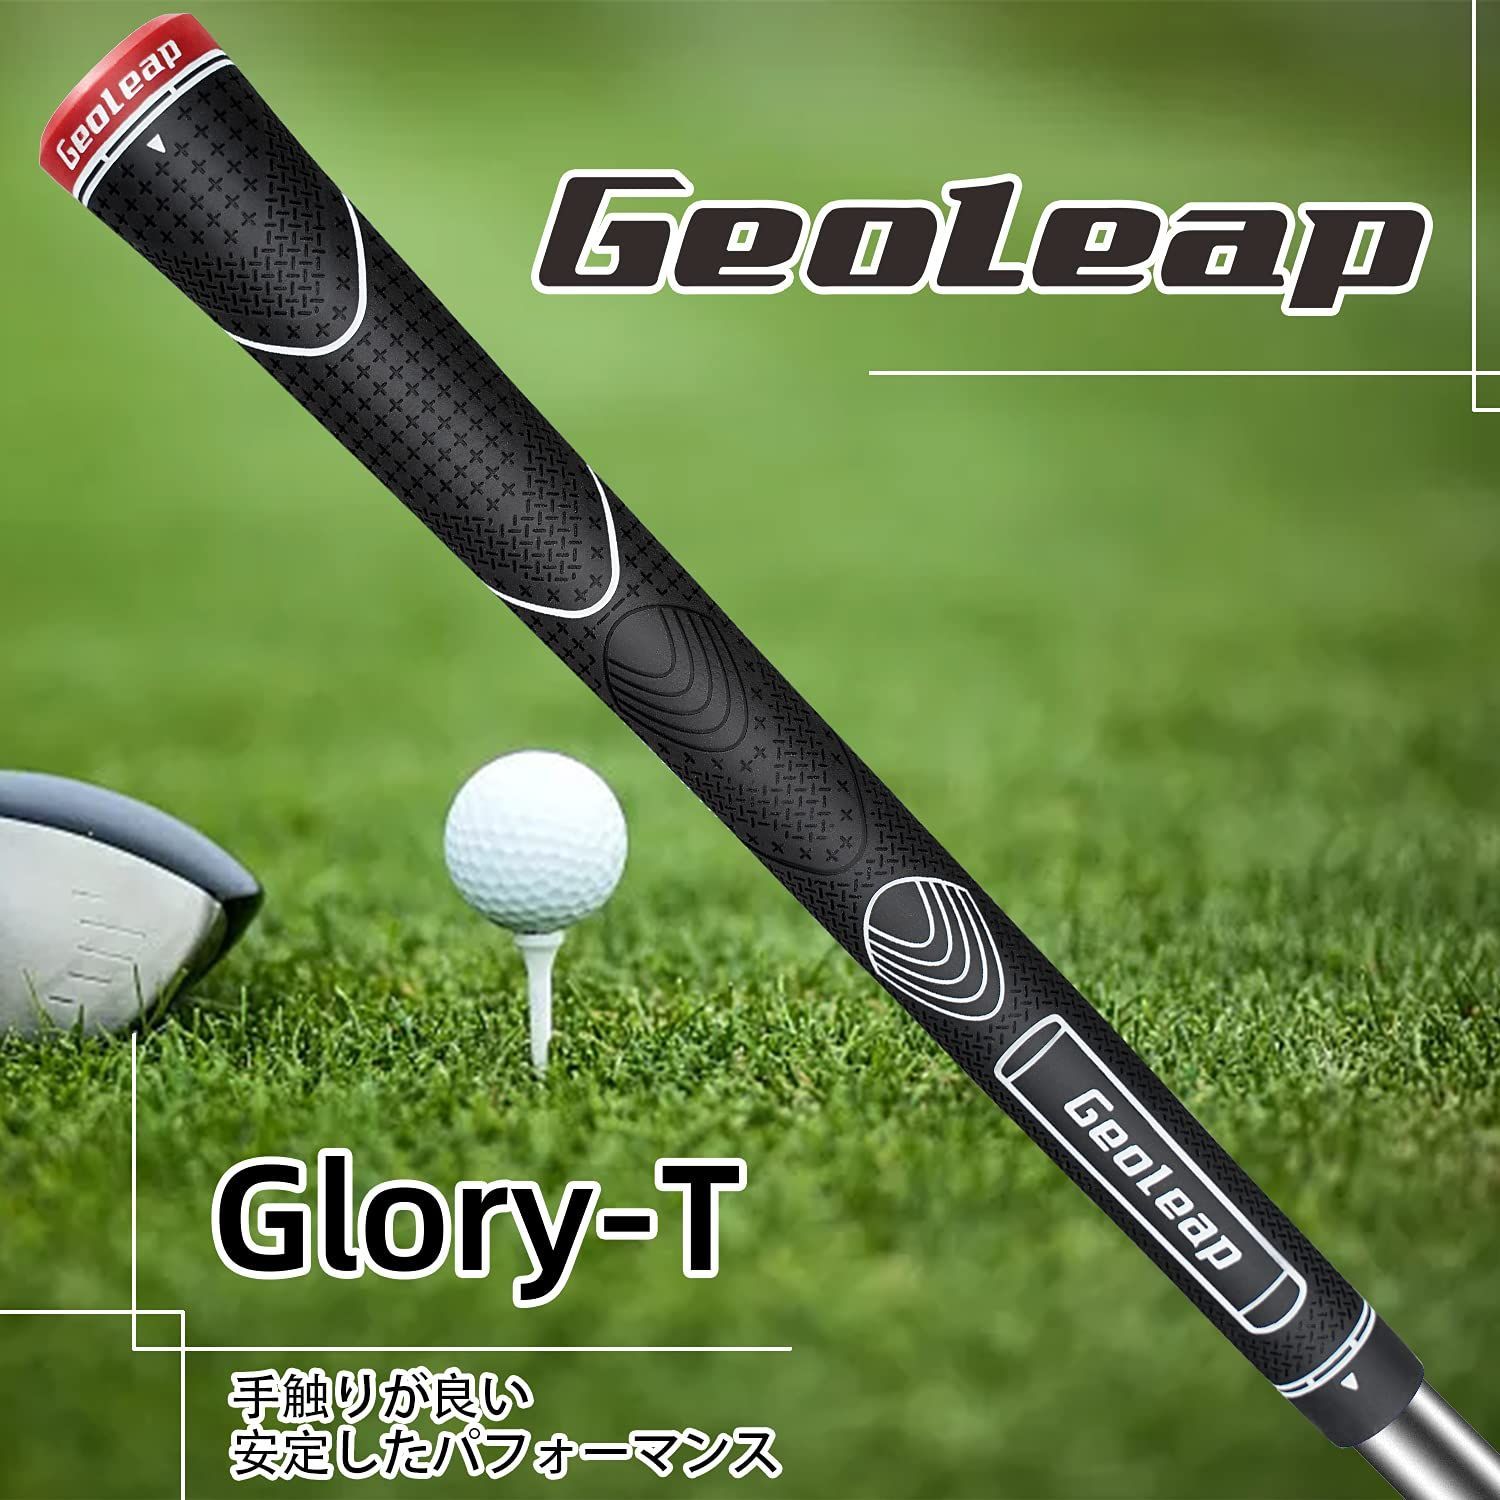 Geoleap Glory-Tゴム製ゴルフグリップ 、13本セット、スタンダード 